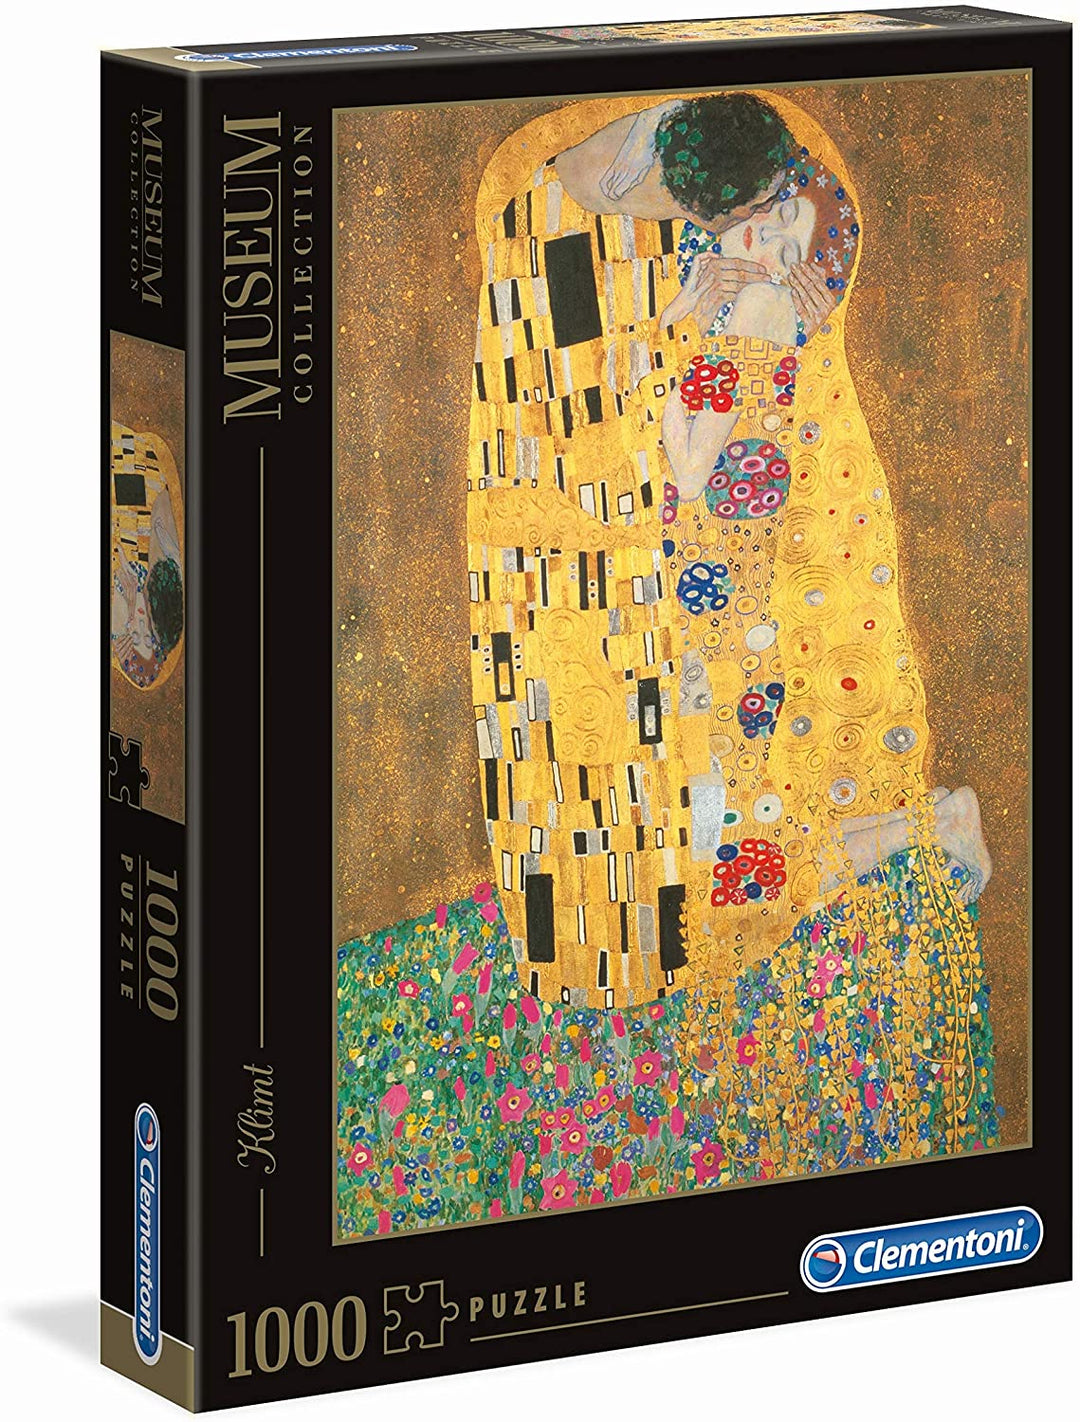 Clementoni Jigsaw Puzzle 1000 Pieces Klimt The Kiss